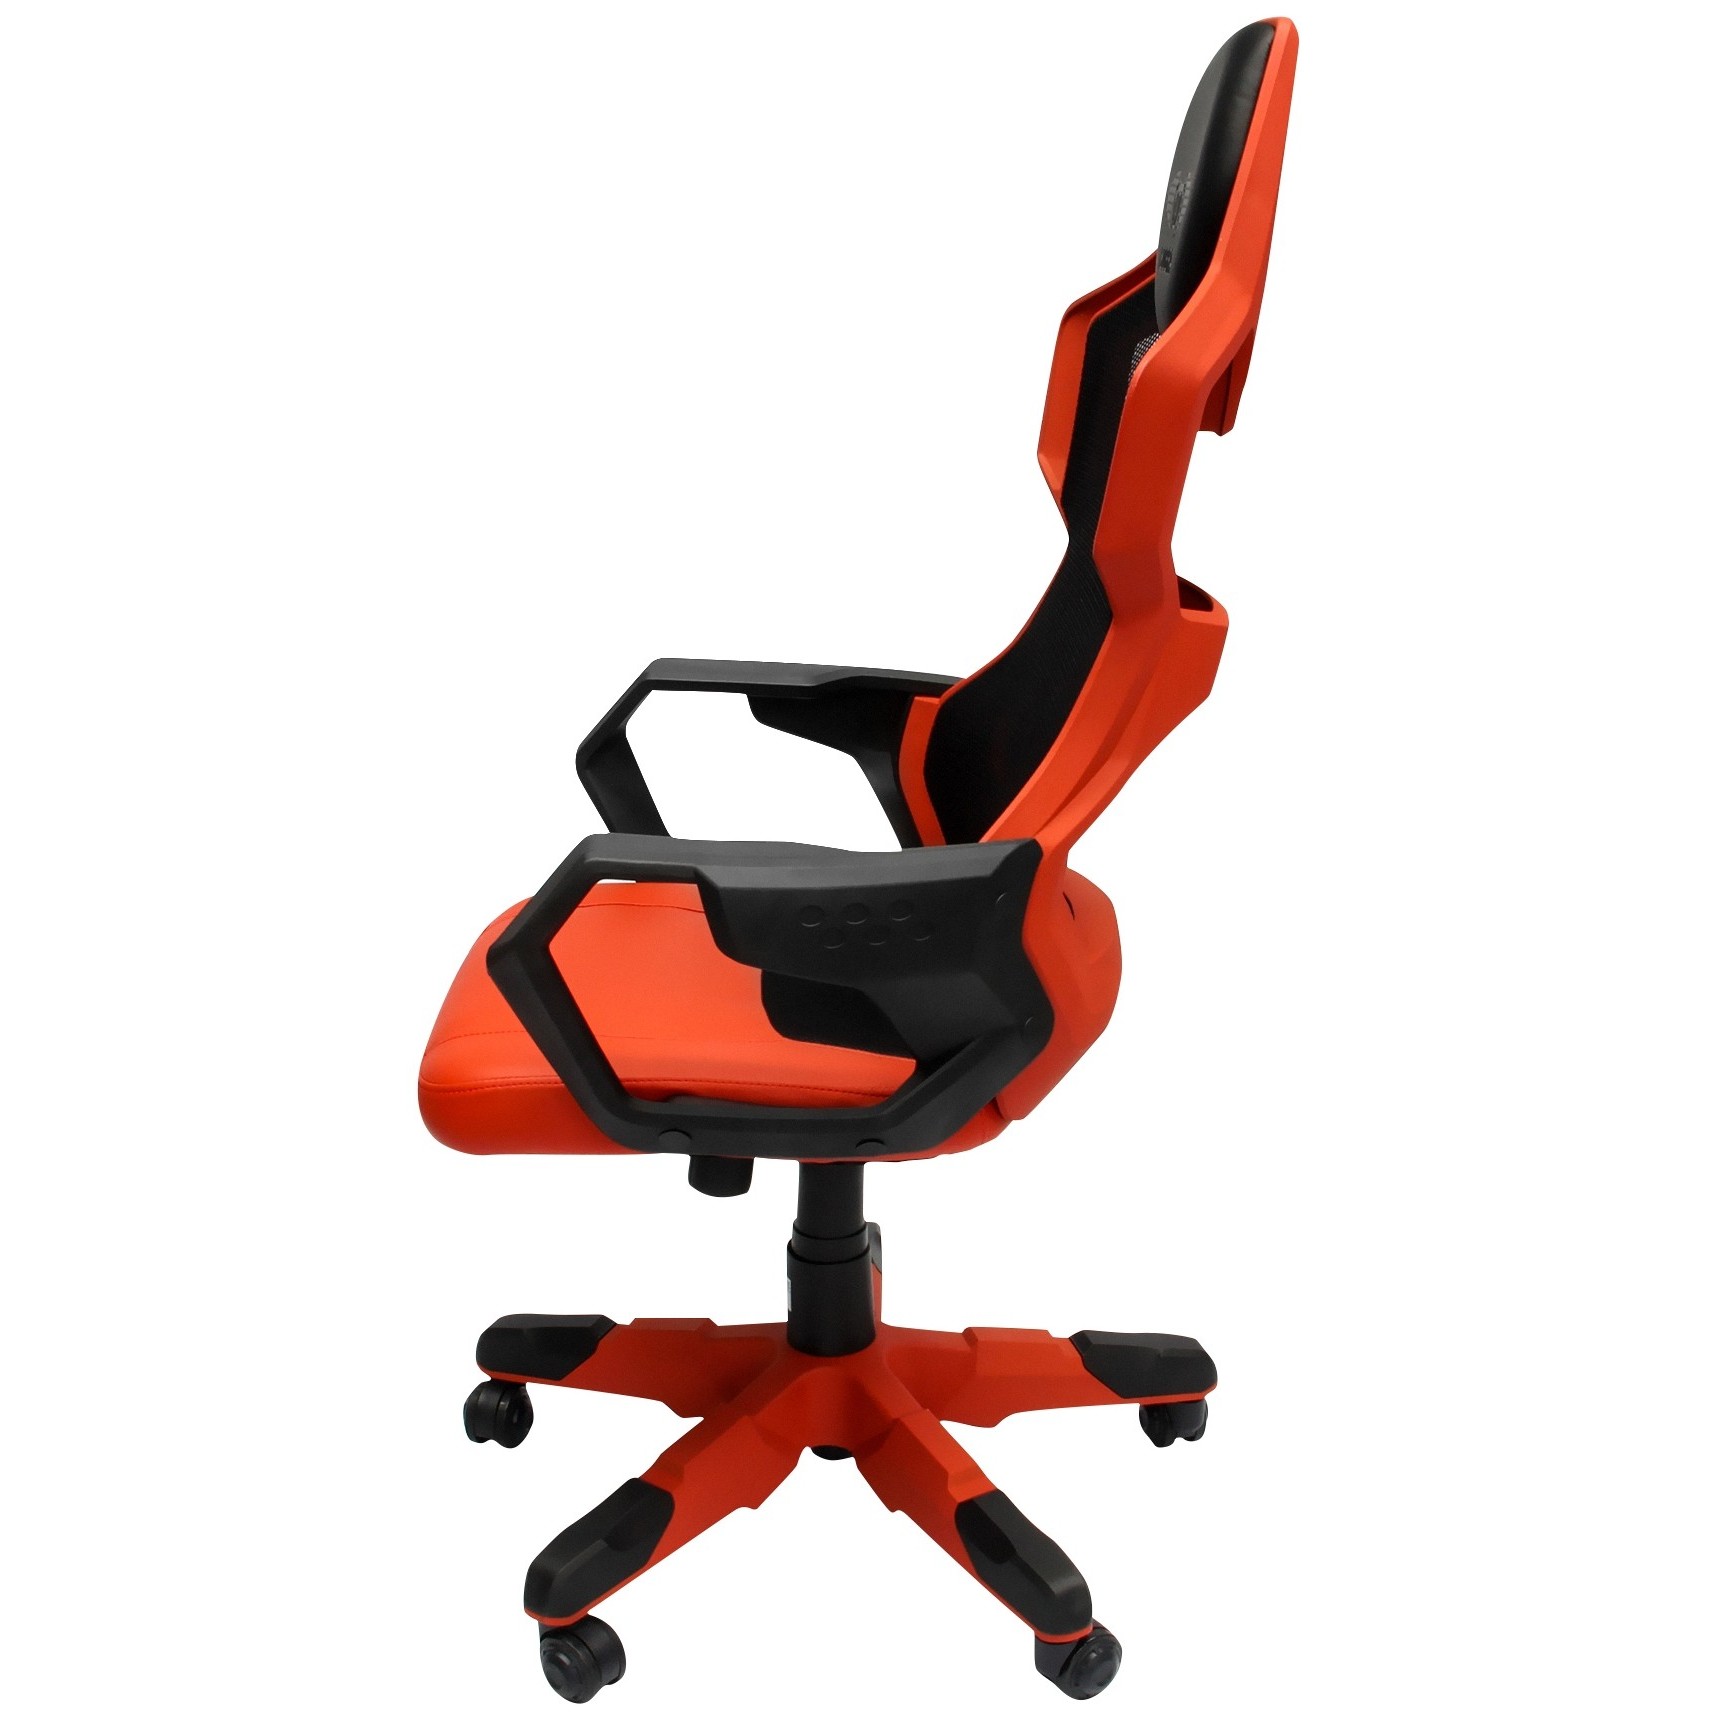 Gaming cobra. Игровое кресло 2e Chair Hibagon Black/Red. E-Blue Cobra кресло. E-Blue professional Gaming Seat Cobra офисный стул. Giotto Stoppino Cobra стул.